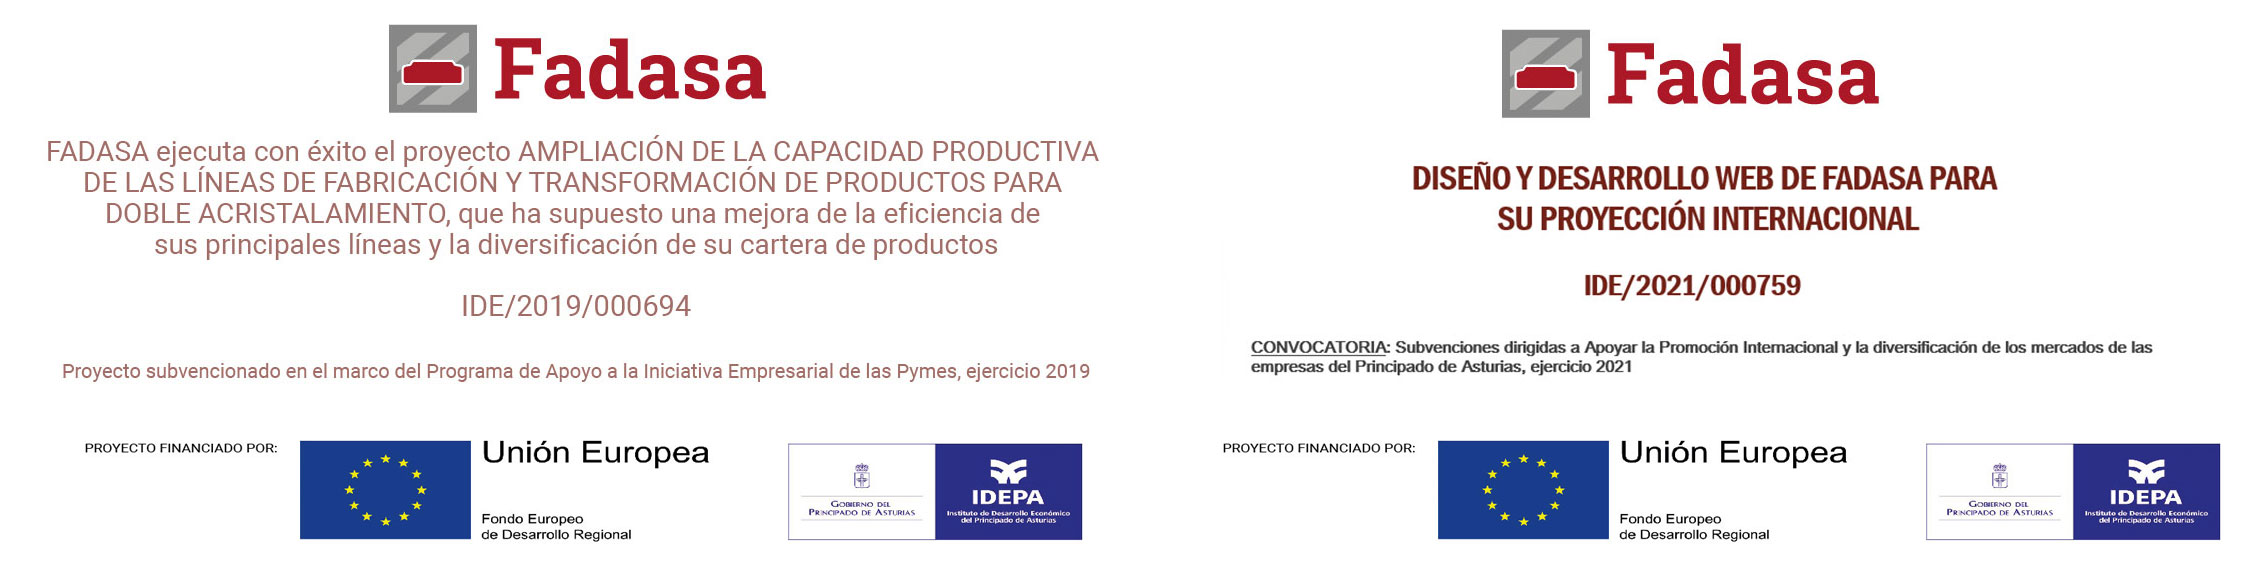 Proyecto subvencionado por Unión Europea (Fondo Europeo de Desarrollo Regional) / Gobierno del Principado de Asturias (IDEPA) / Industria 4.0 Asturias